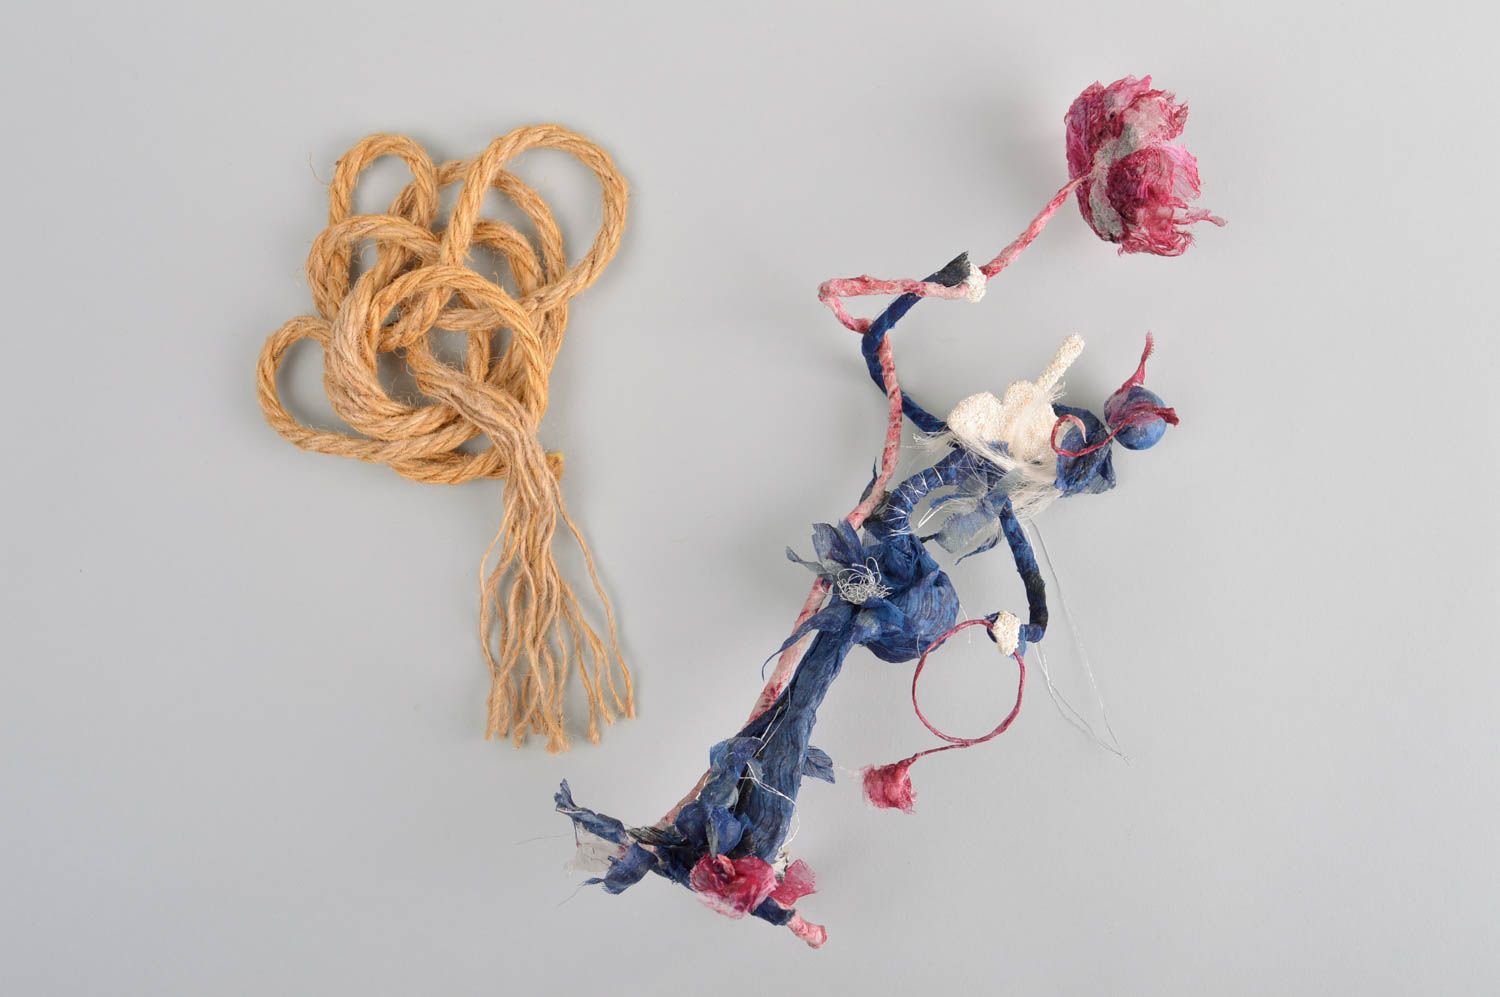 Stoff Puppe handmade Kinder Spielzeug Geschenk Idee Deko Puppe originell blau foto 1